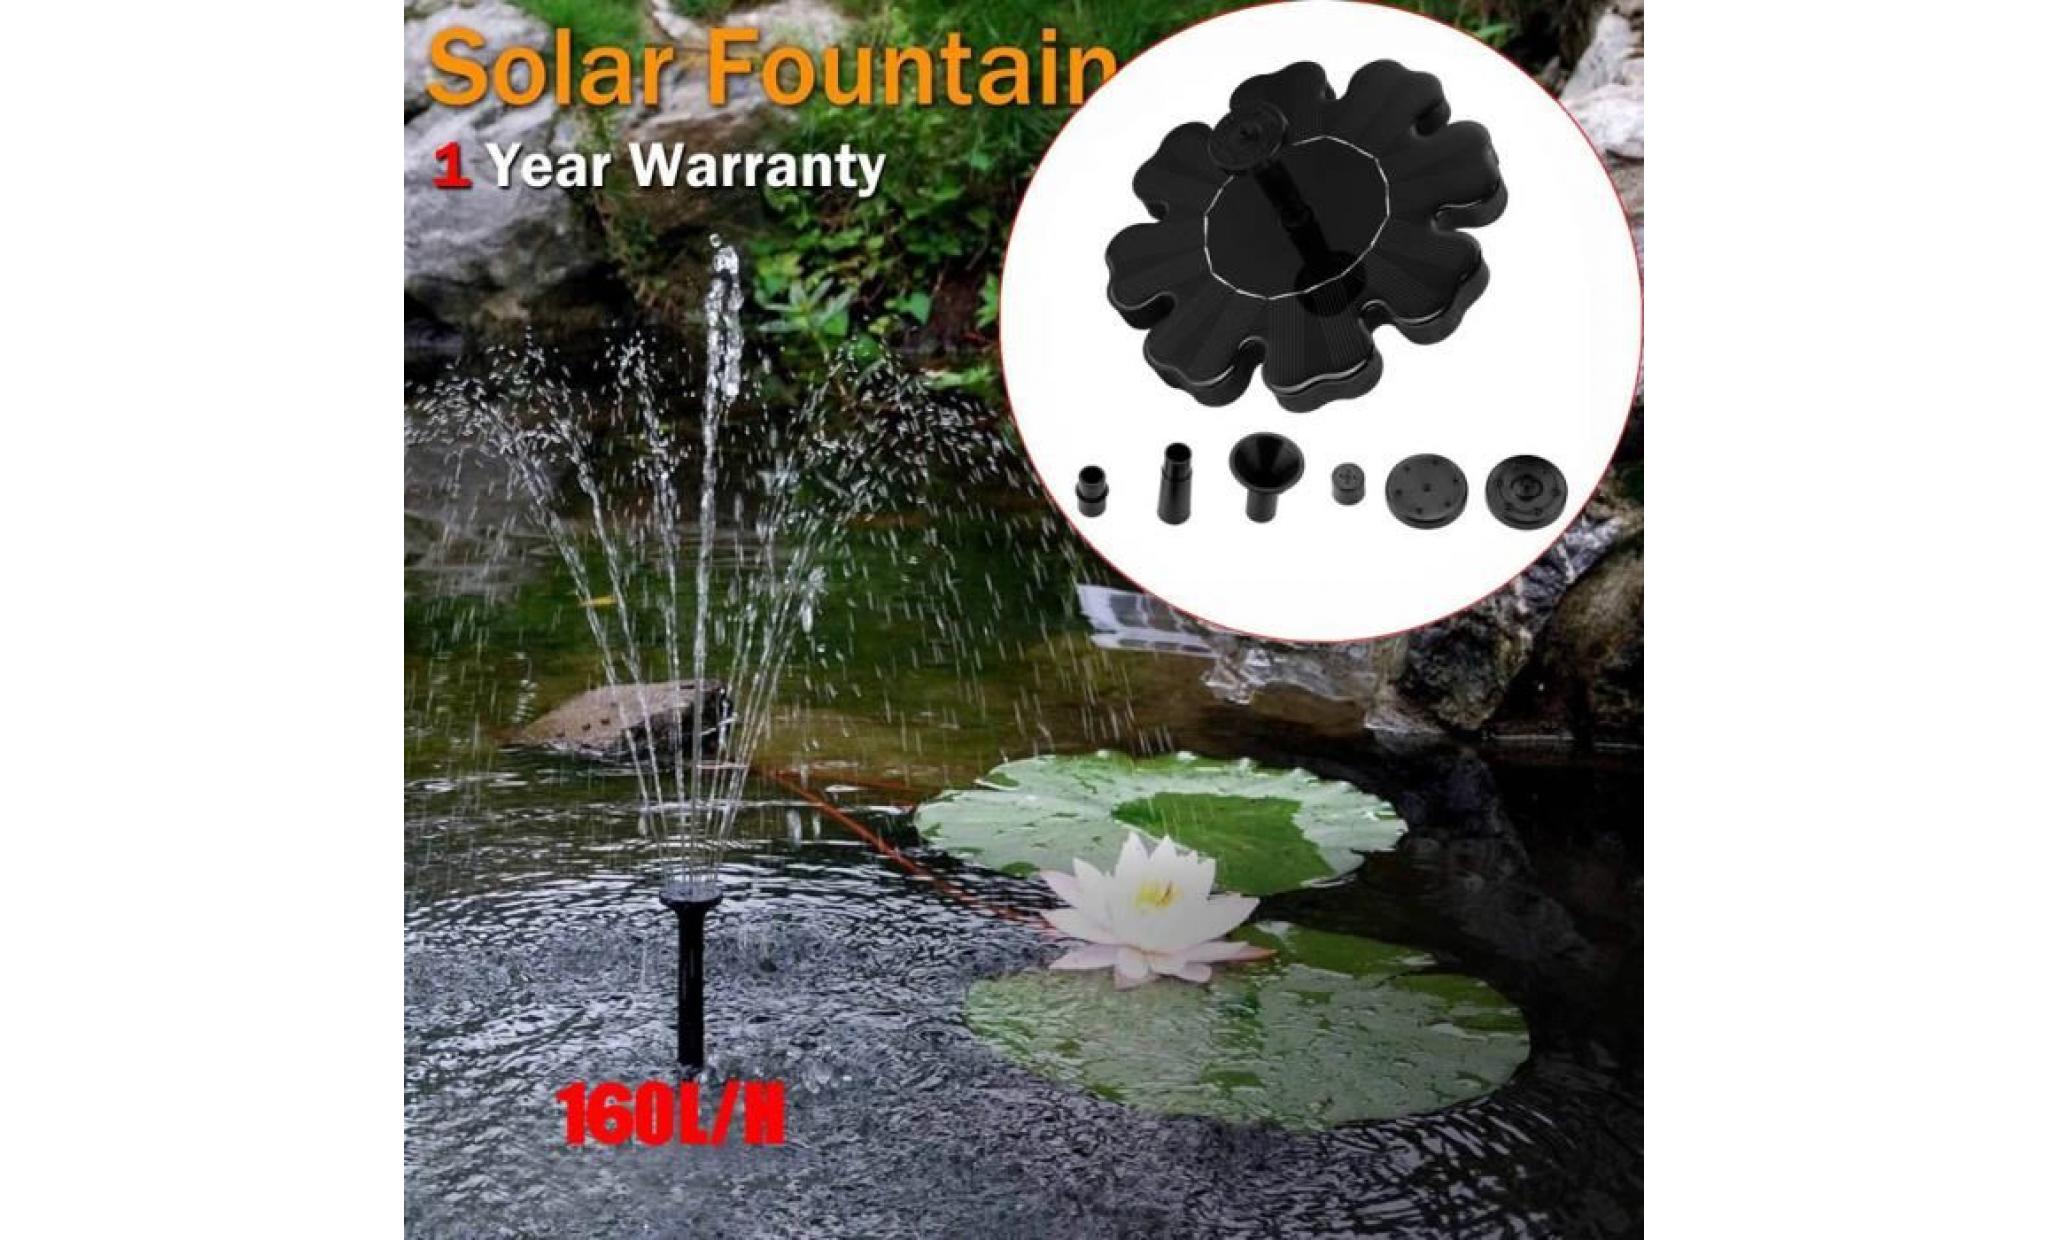 poi@ extérieur à énergie solaire oiseaux bain d'eau fontaine pompe pour piscine, jardin, aquarium noir_34